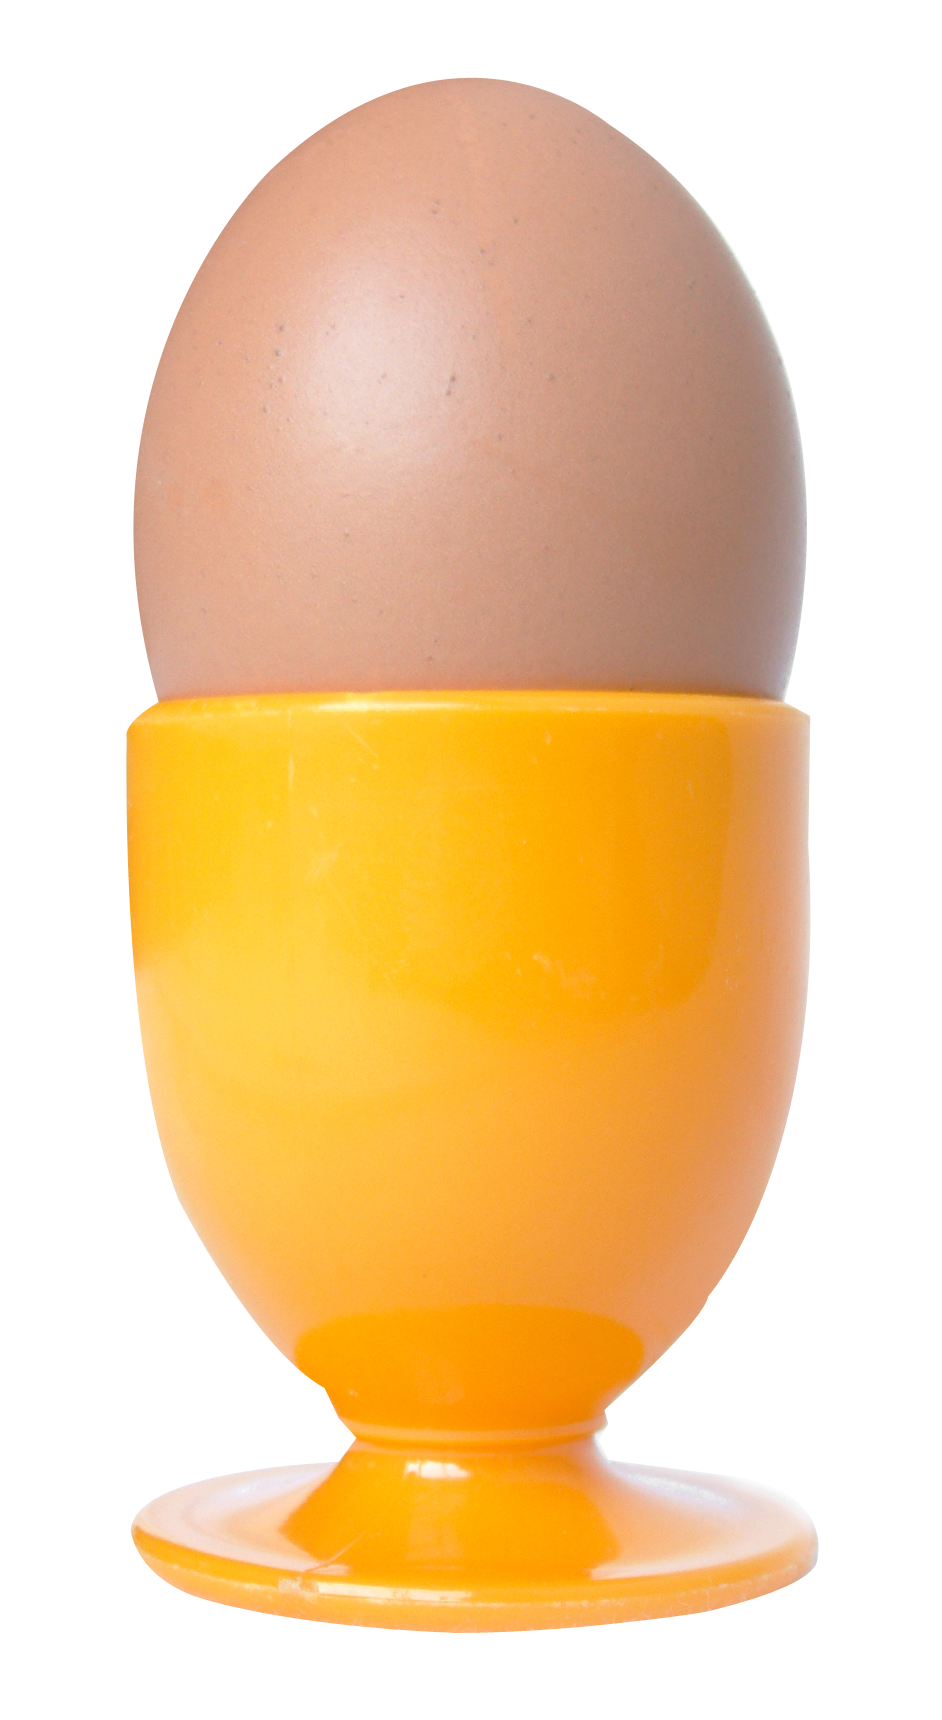 Eggin Orange Cup.png PNG image